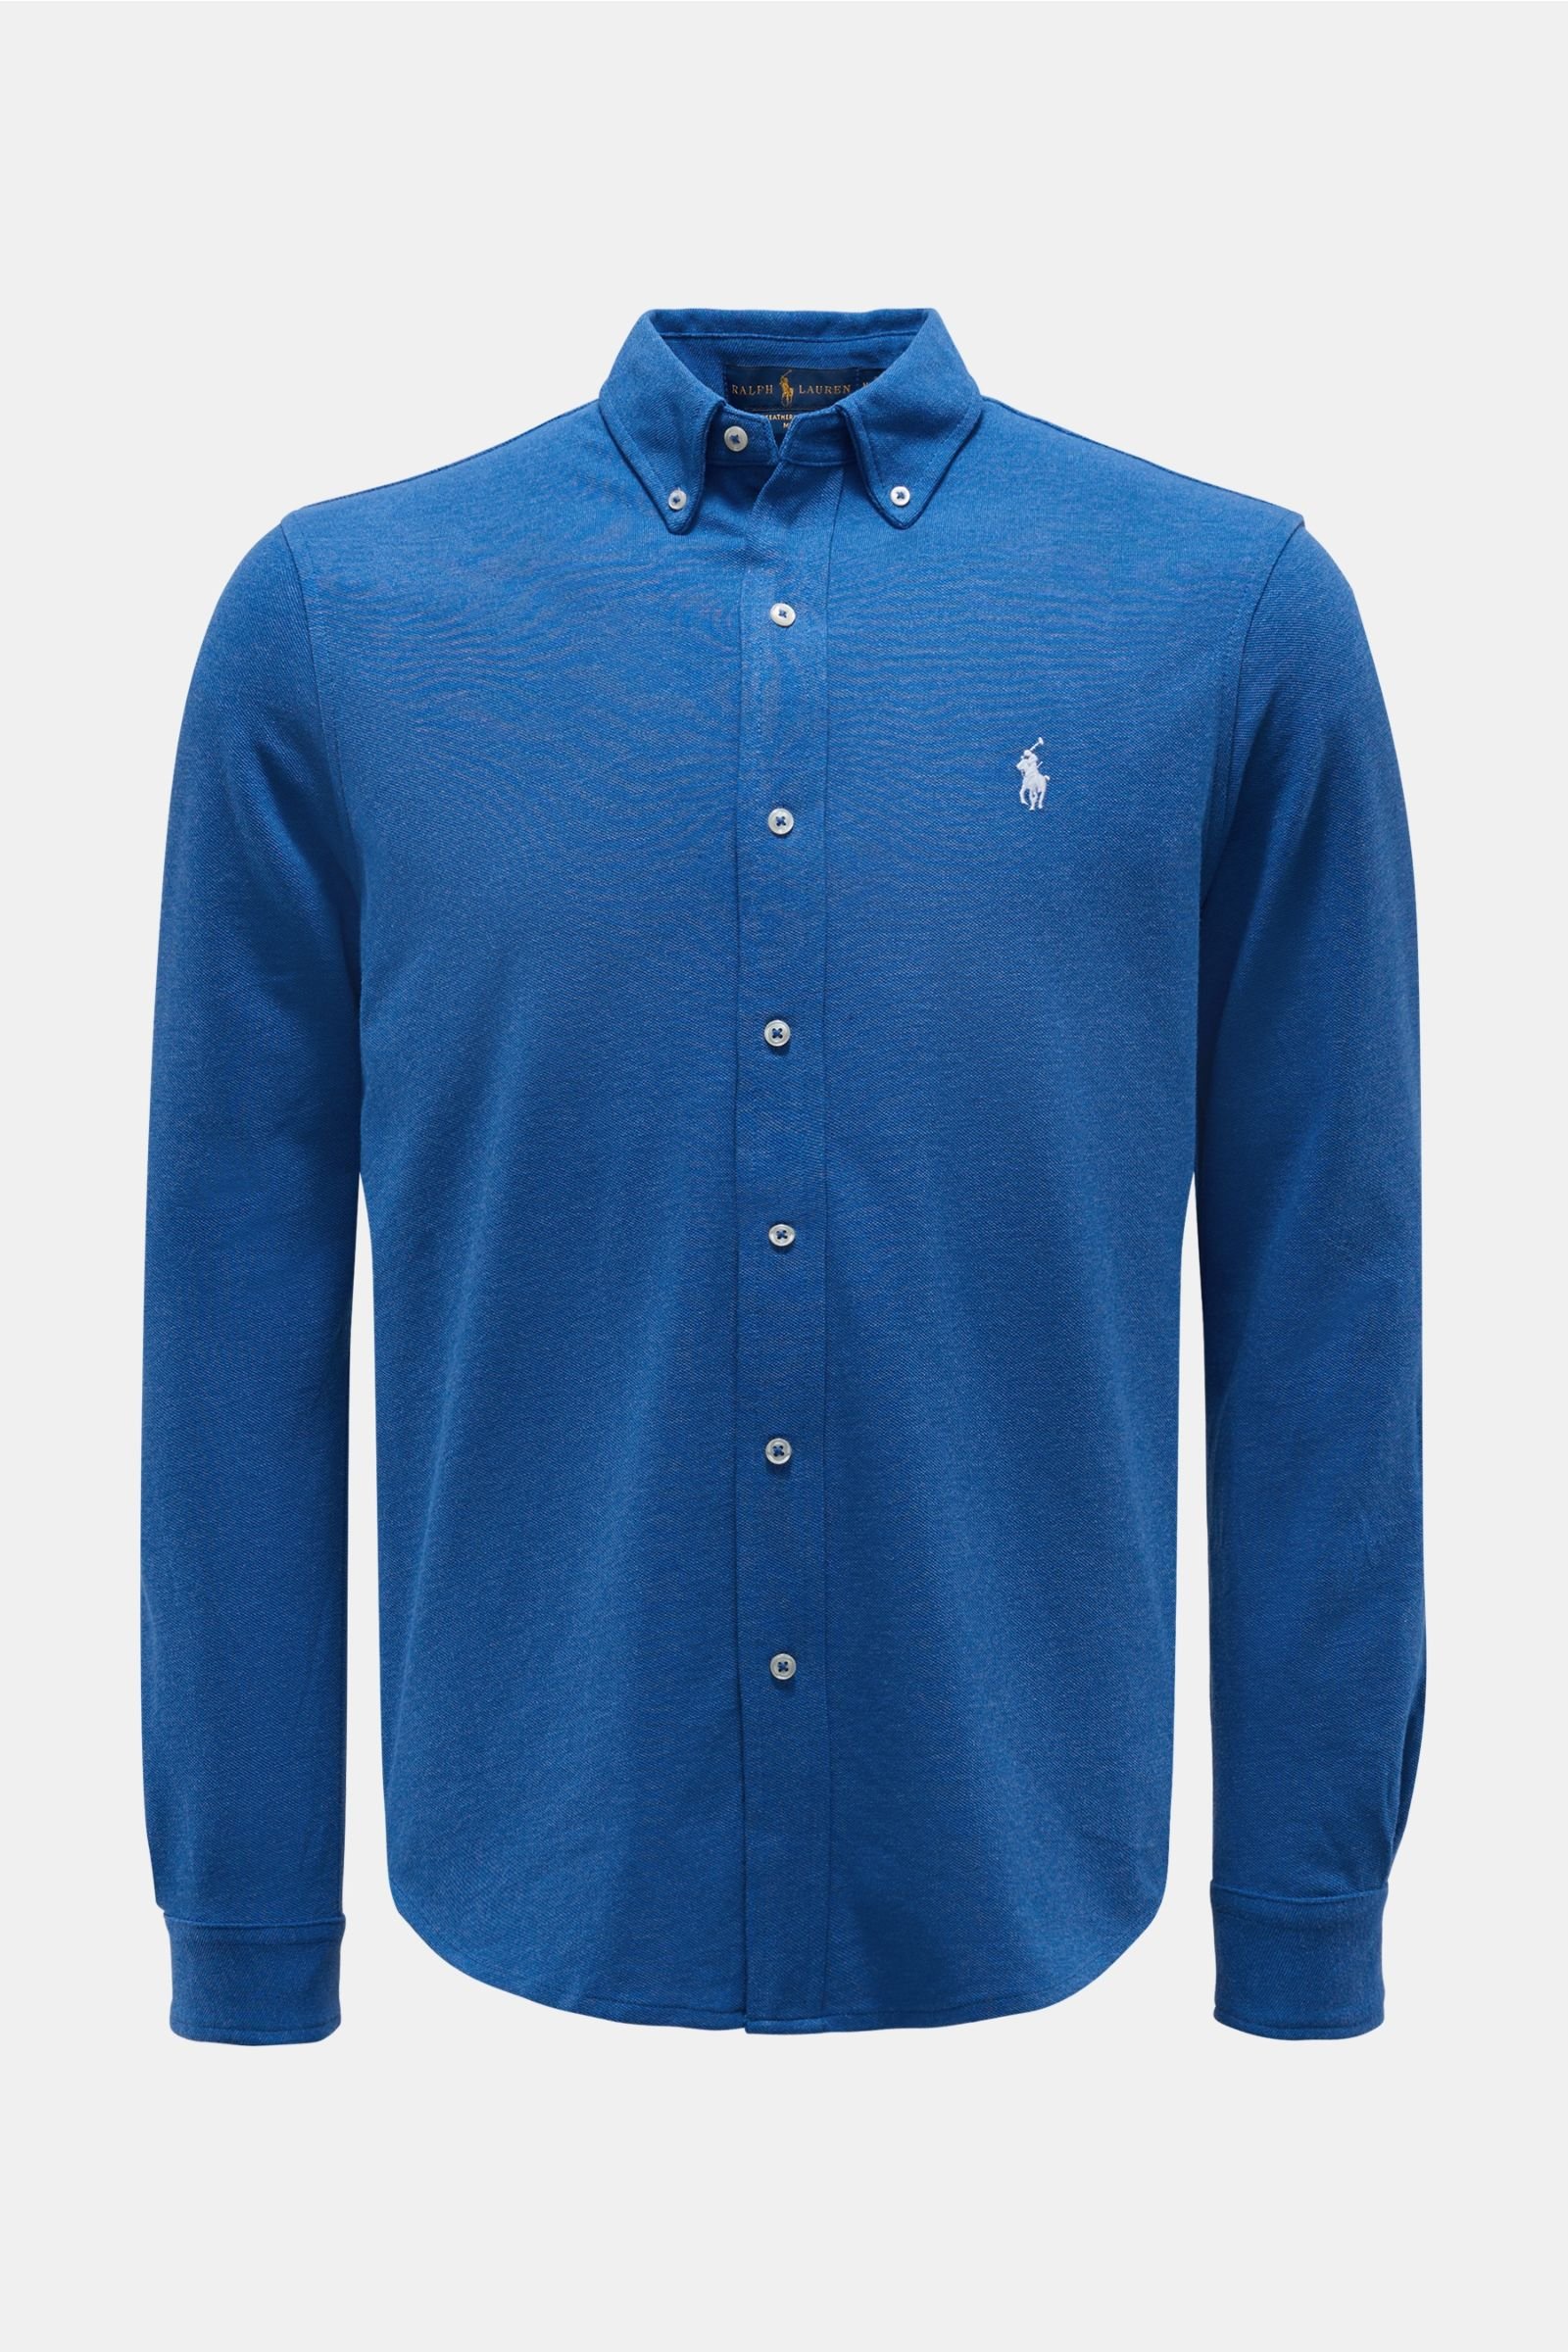 Jersey shirt button-down collar blue